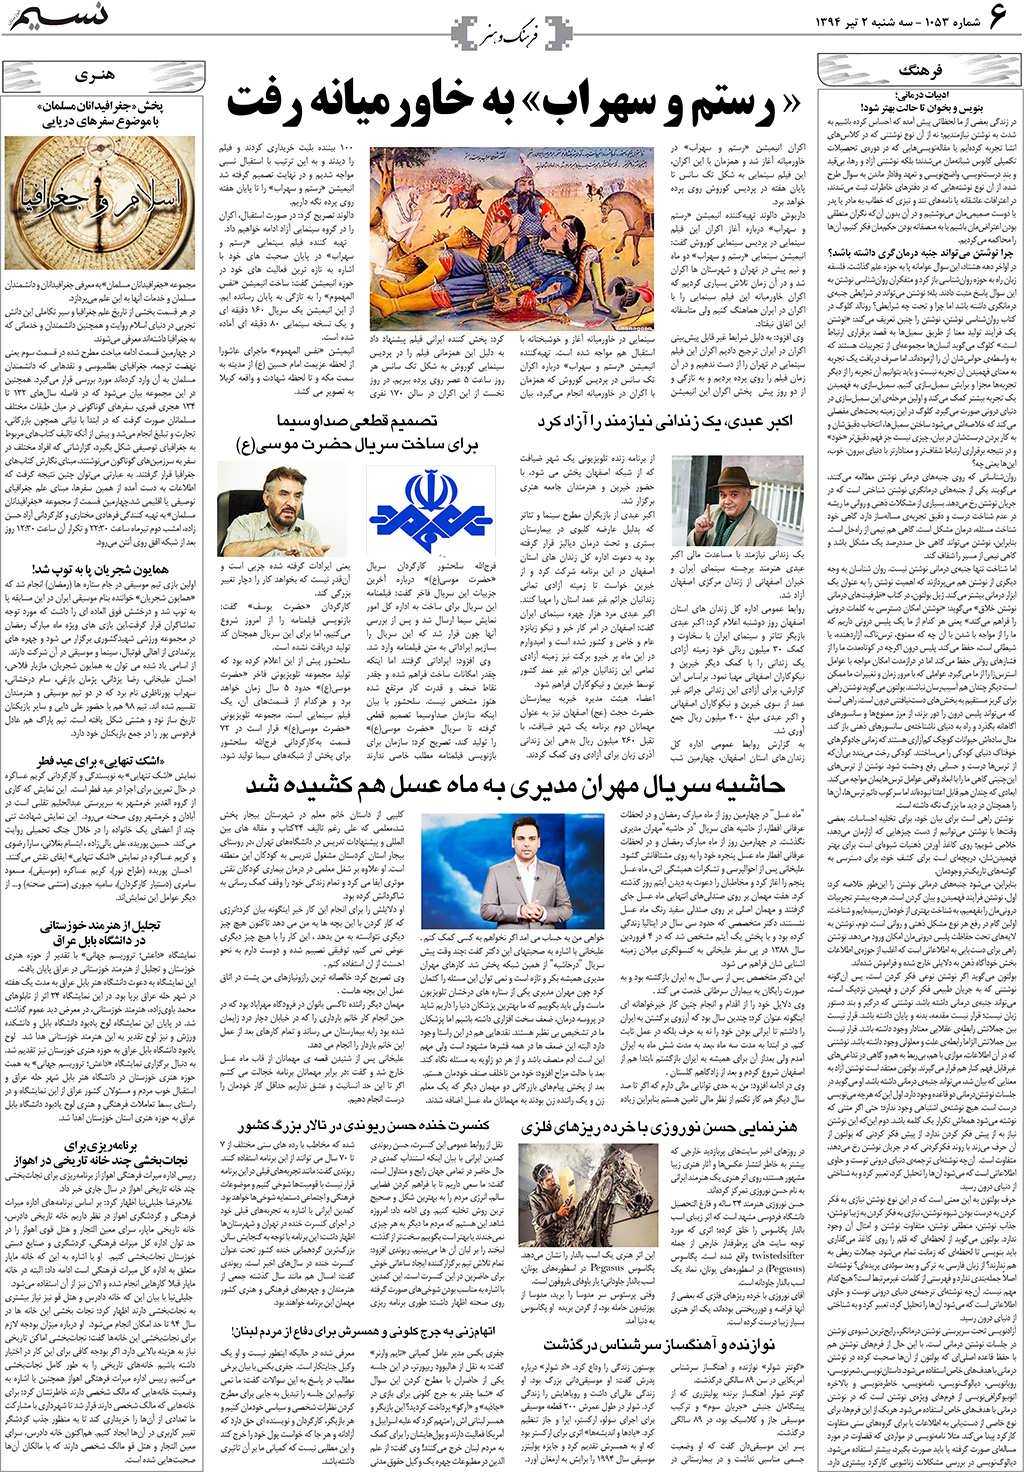 صفحه فرهنگ و هنر روزنامه نسیم شماره 1053